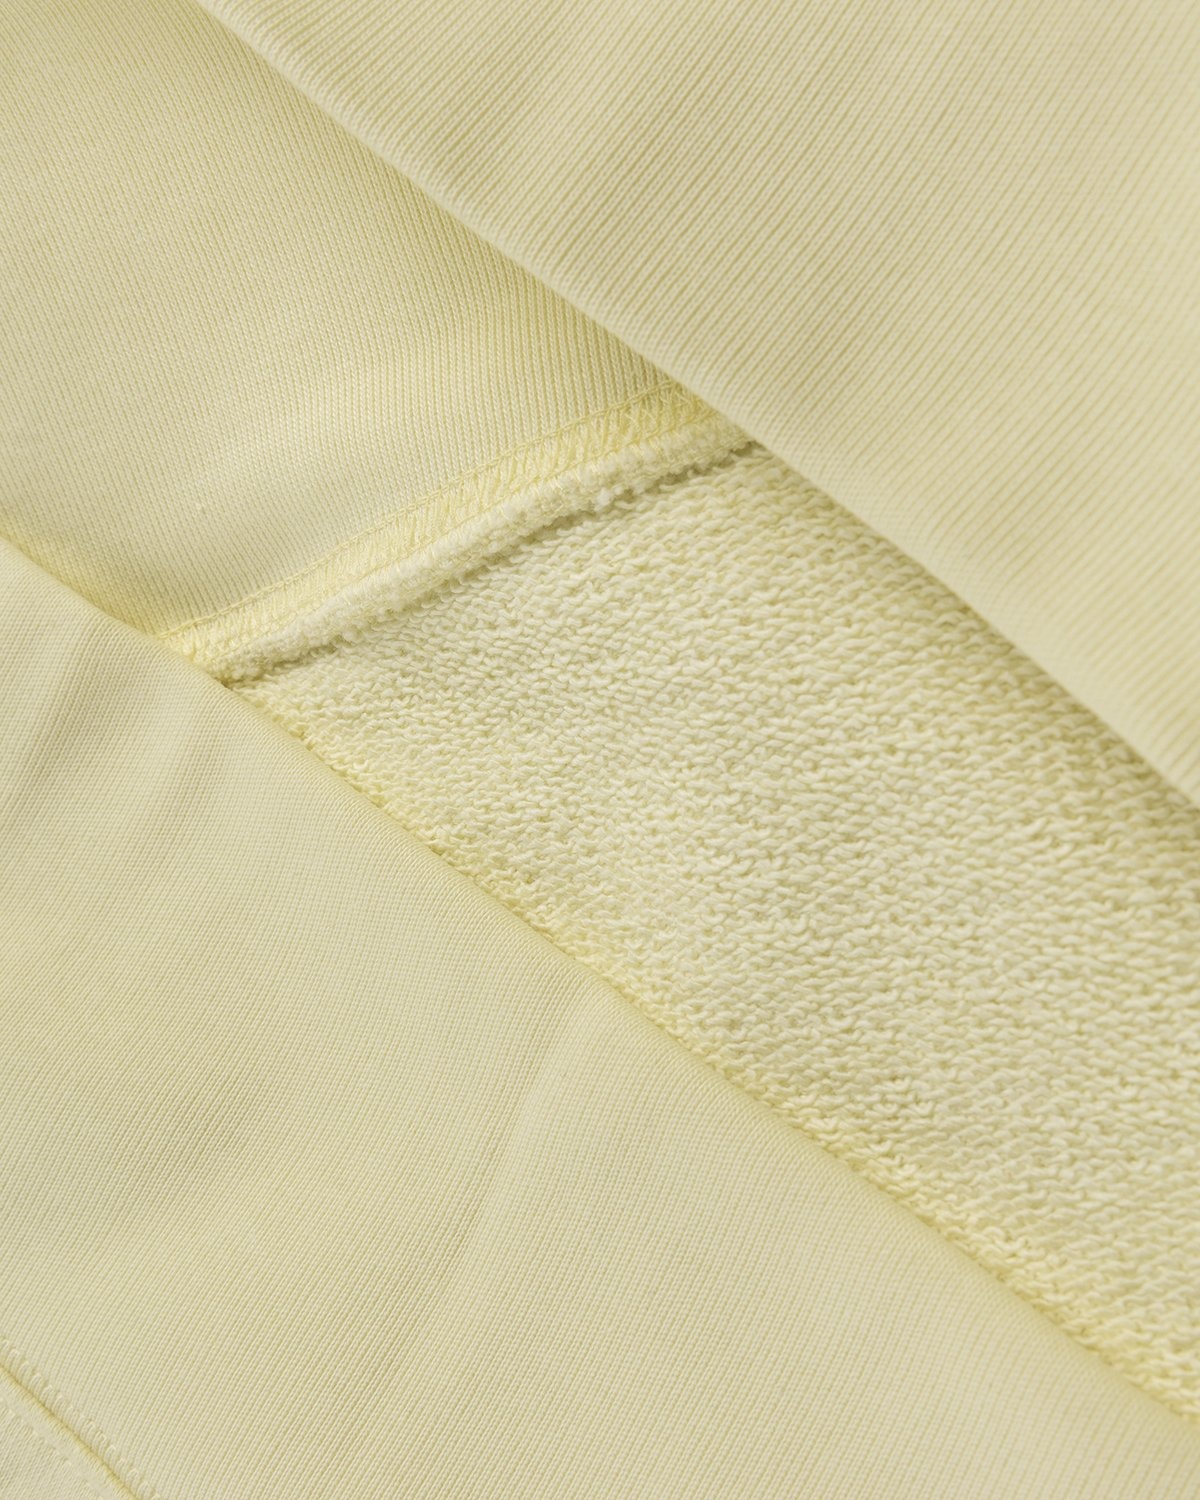 Acne Studios – Organic Cotton Hooded Sweatshirt Vanilla Yellow - Hoodies - Yellow - Image 3